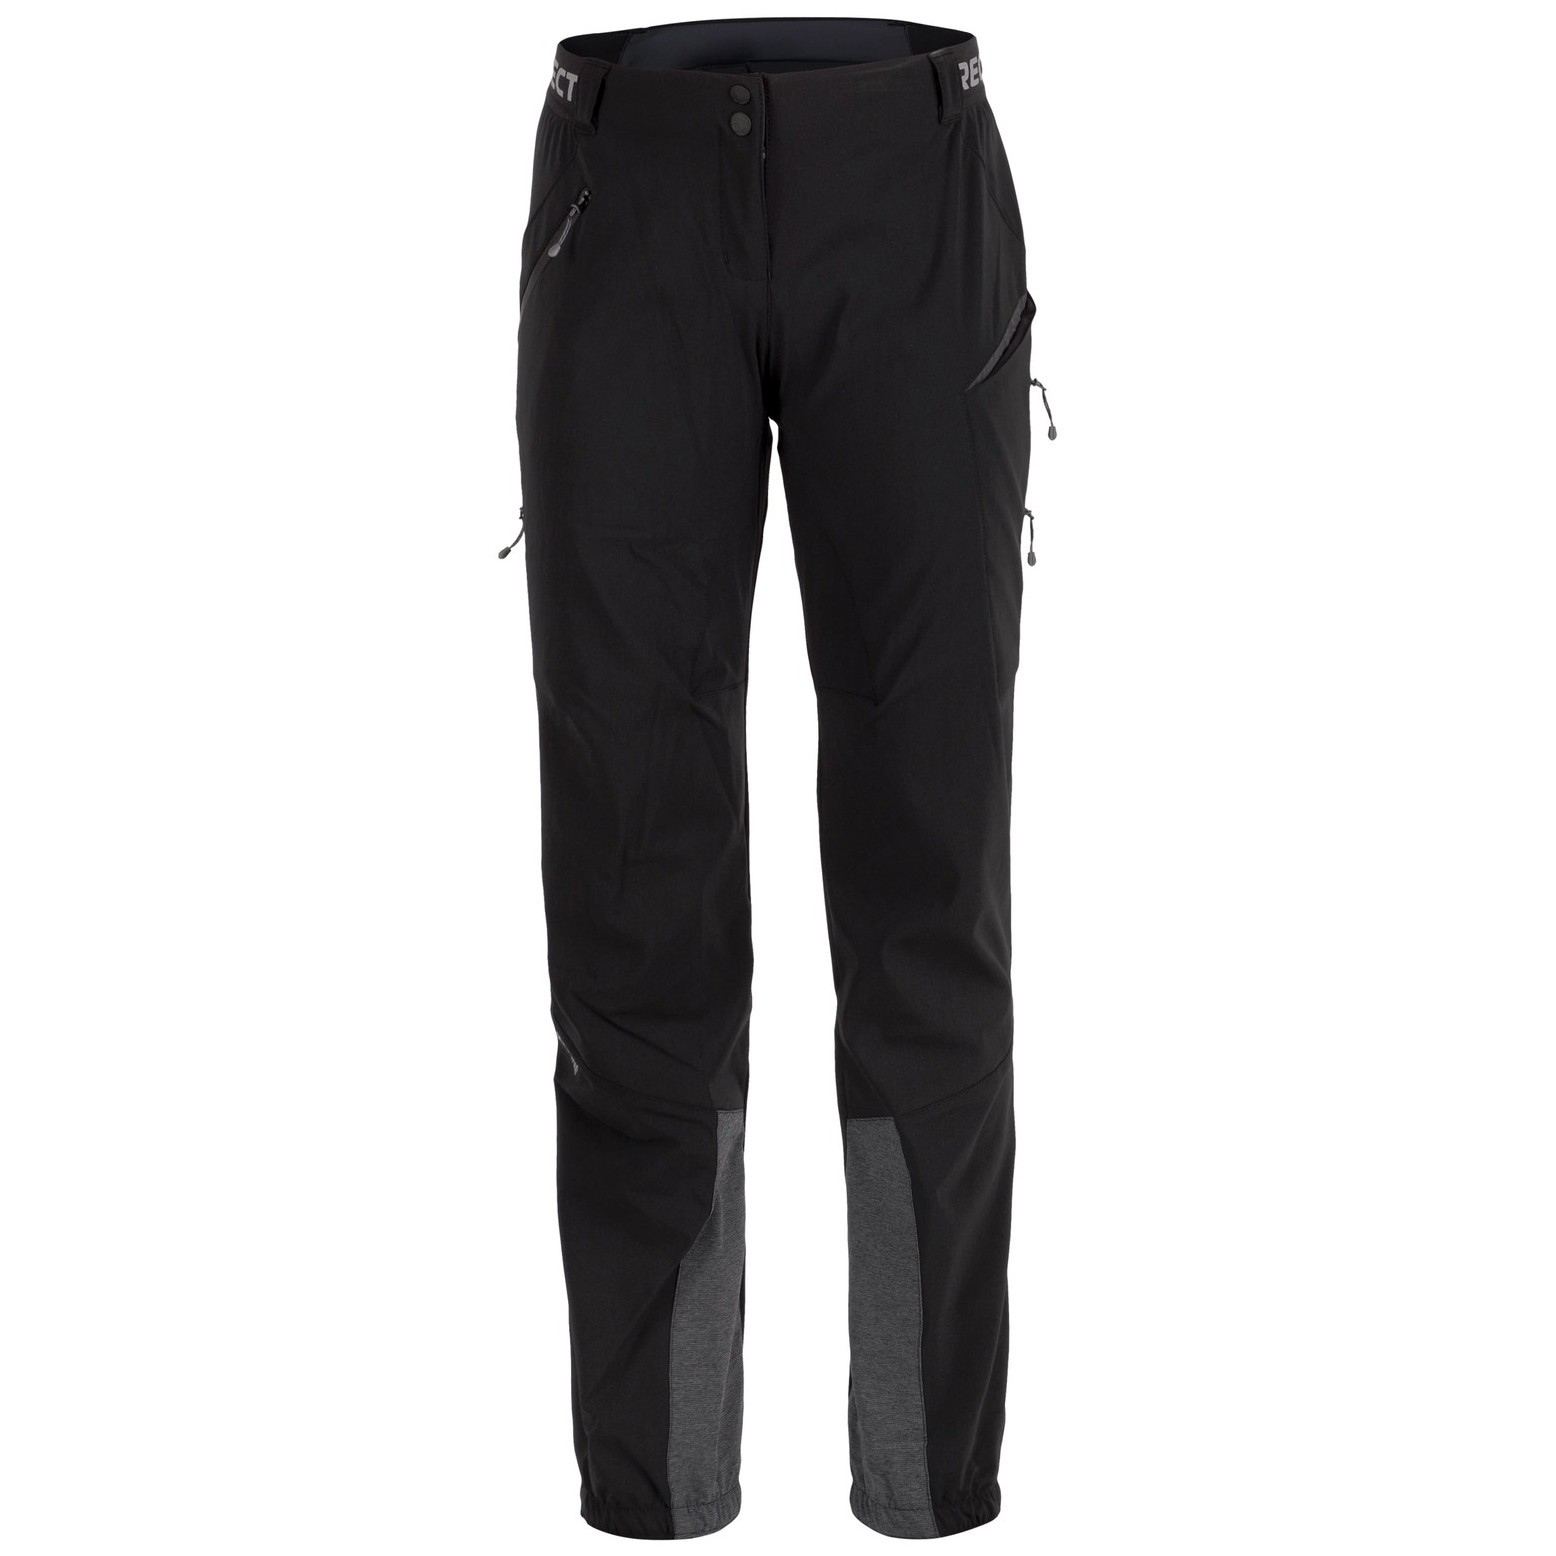 Dámské kalhoty Direct Alpine Rebel Lady 1.0 Velikost: S / Barva: černá/šedá